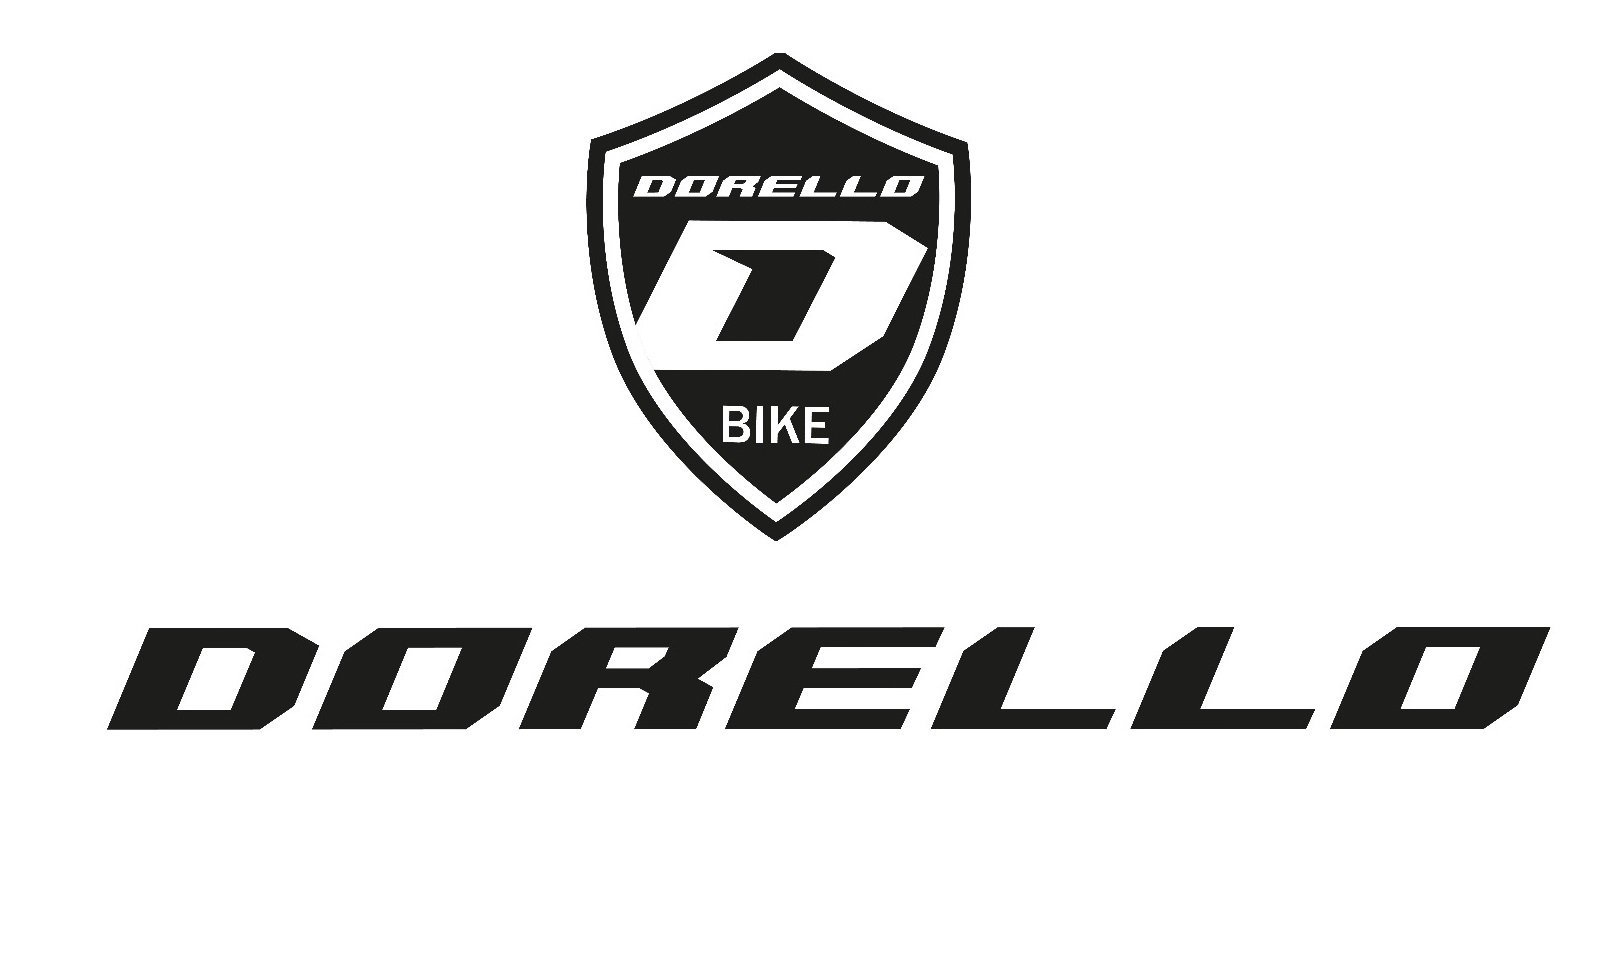 Dorello 29 jant elektrikli bisiklet dorello 48 watt 1000 A mper hidrolik disk özel bisiklet-elektrikli bisiklet dorello-